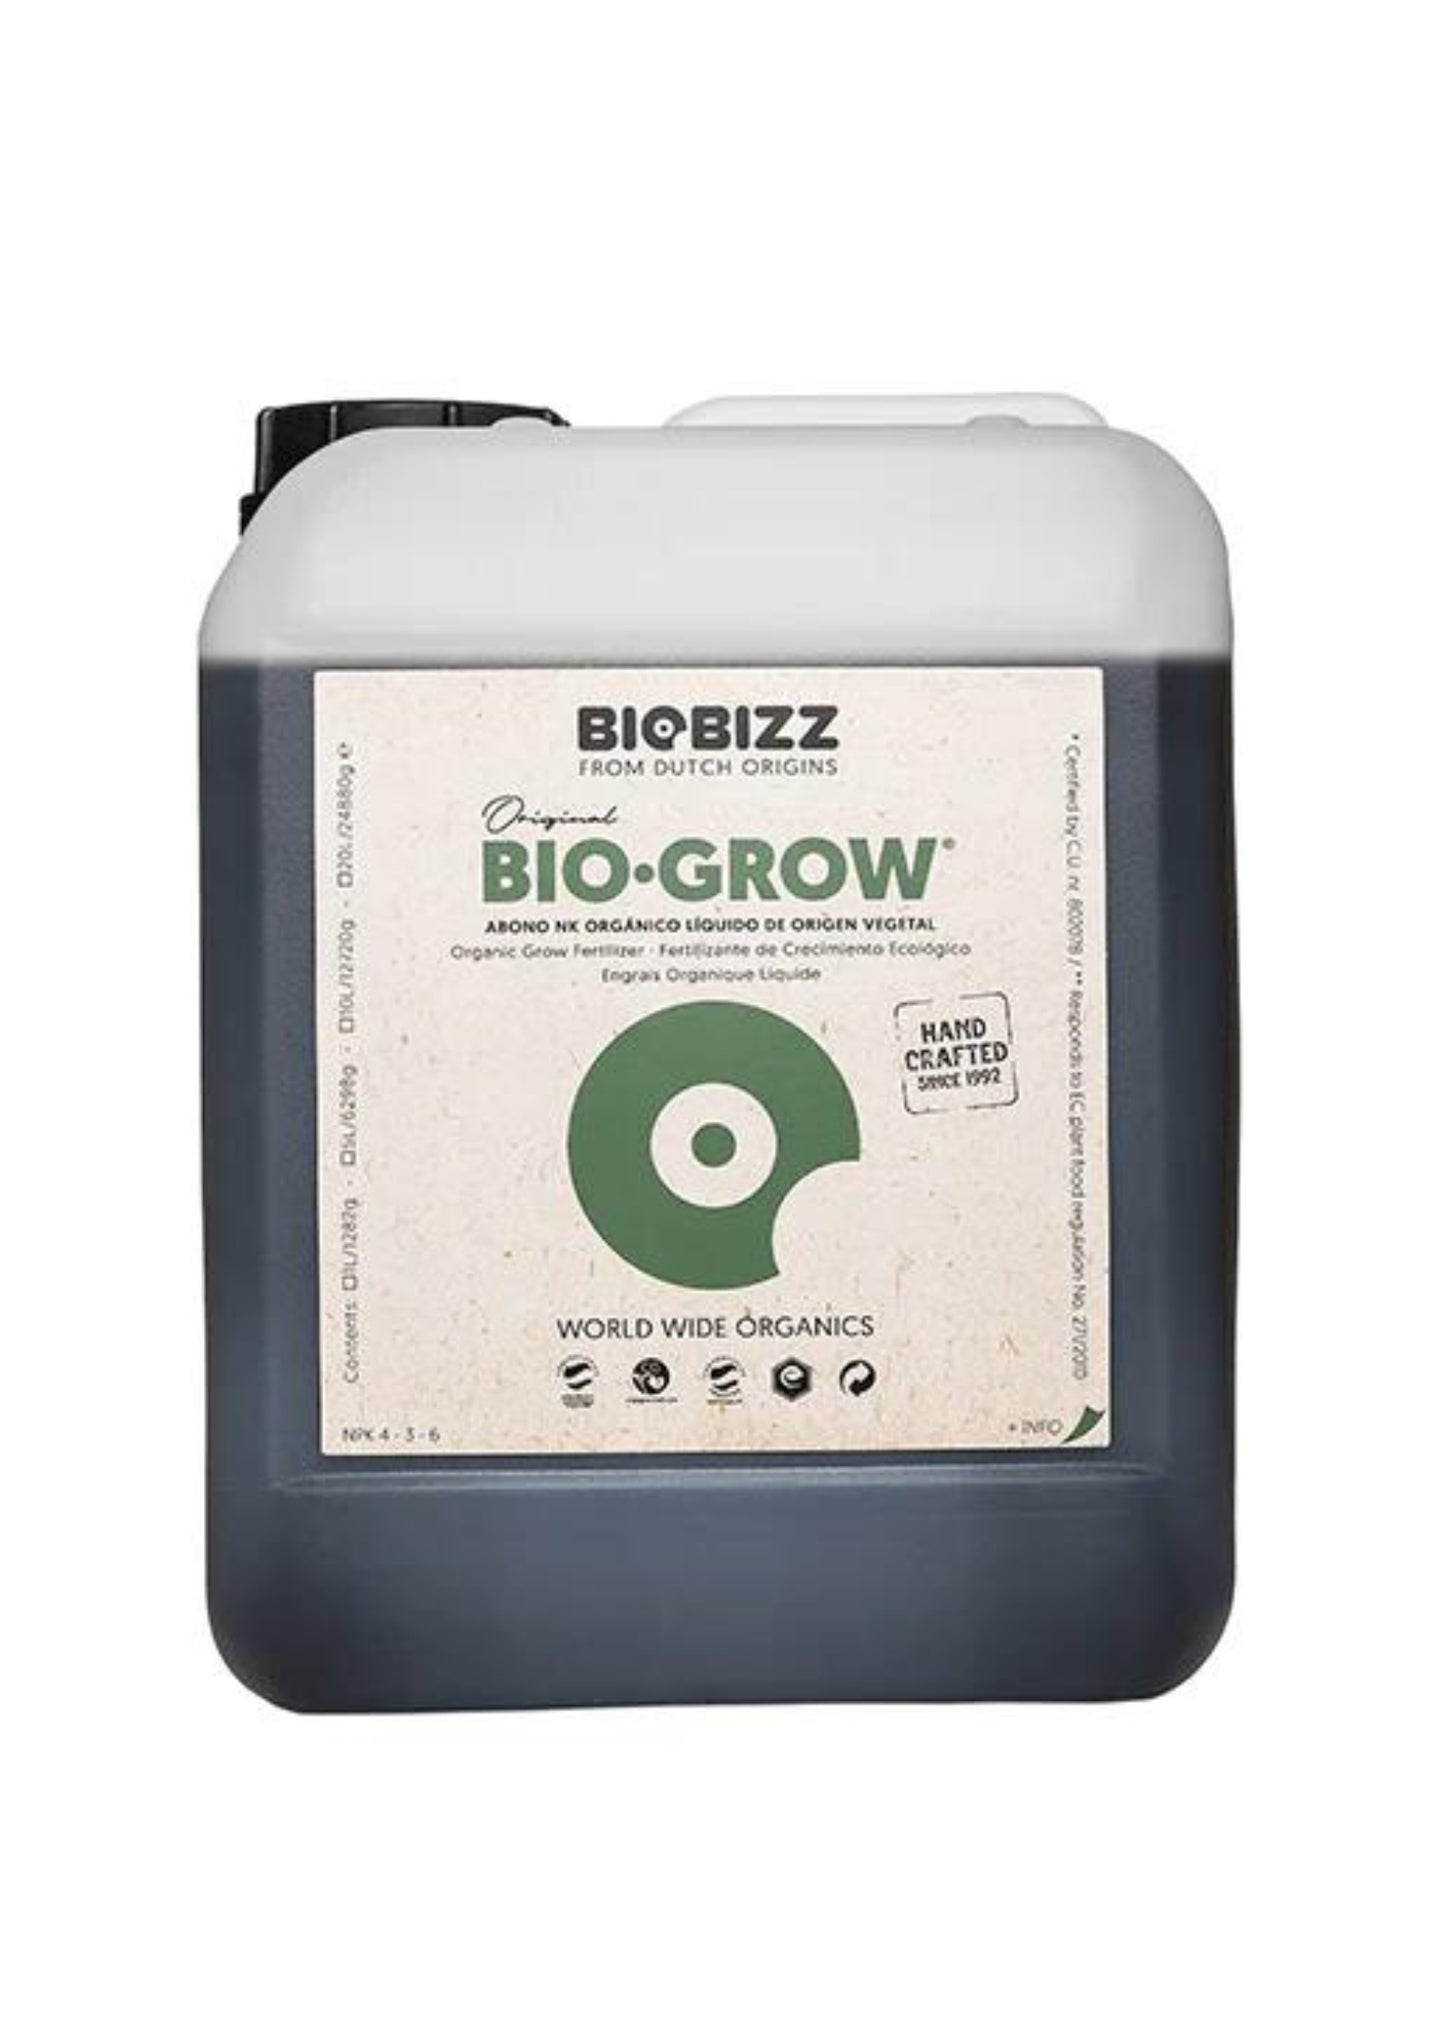 Bio Grow Biobizz